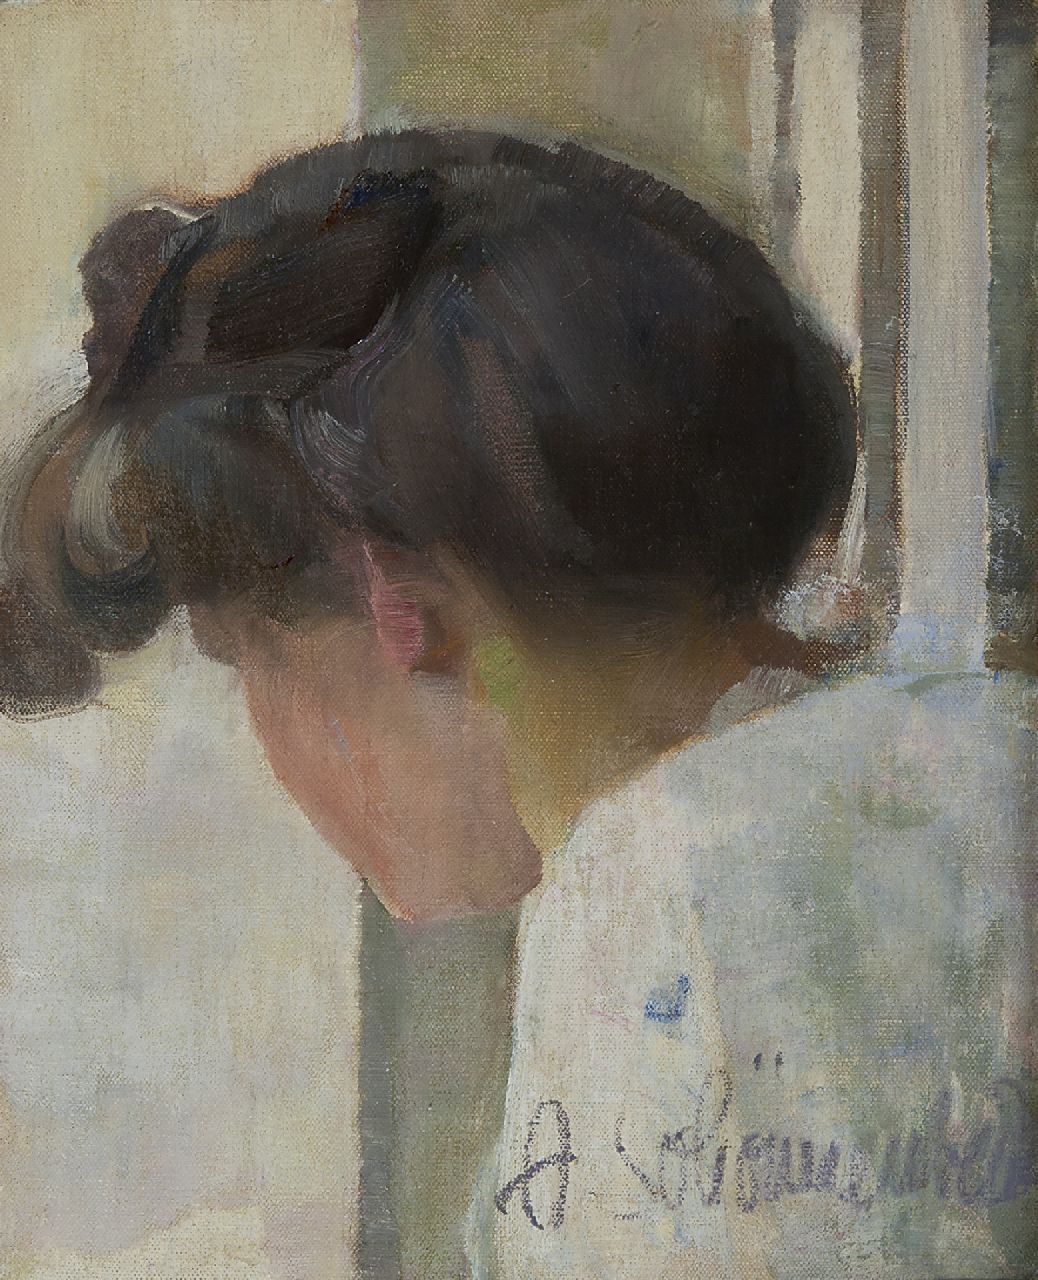 Schönnenbeck C.A.  | Carl 'Adolf' Schönnenbeck | Schilderijen te koop aangeboden | Jonge modieuze vrouw, van opzij gezien, olieverf op doek 36,0 x 29,2 cm, gesigneerd rechtsonder